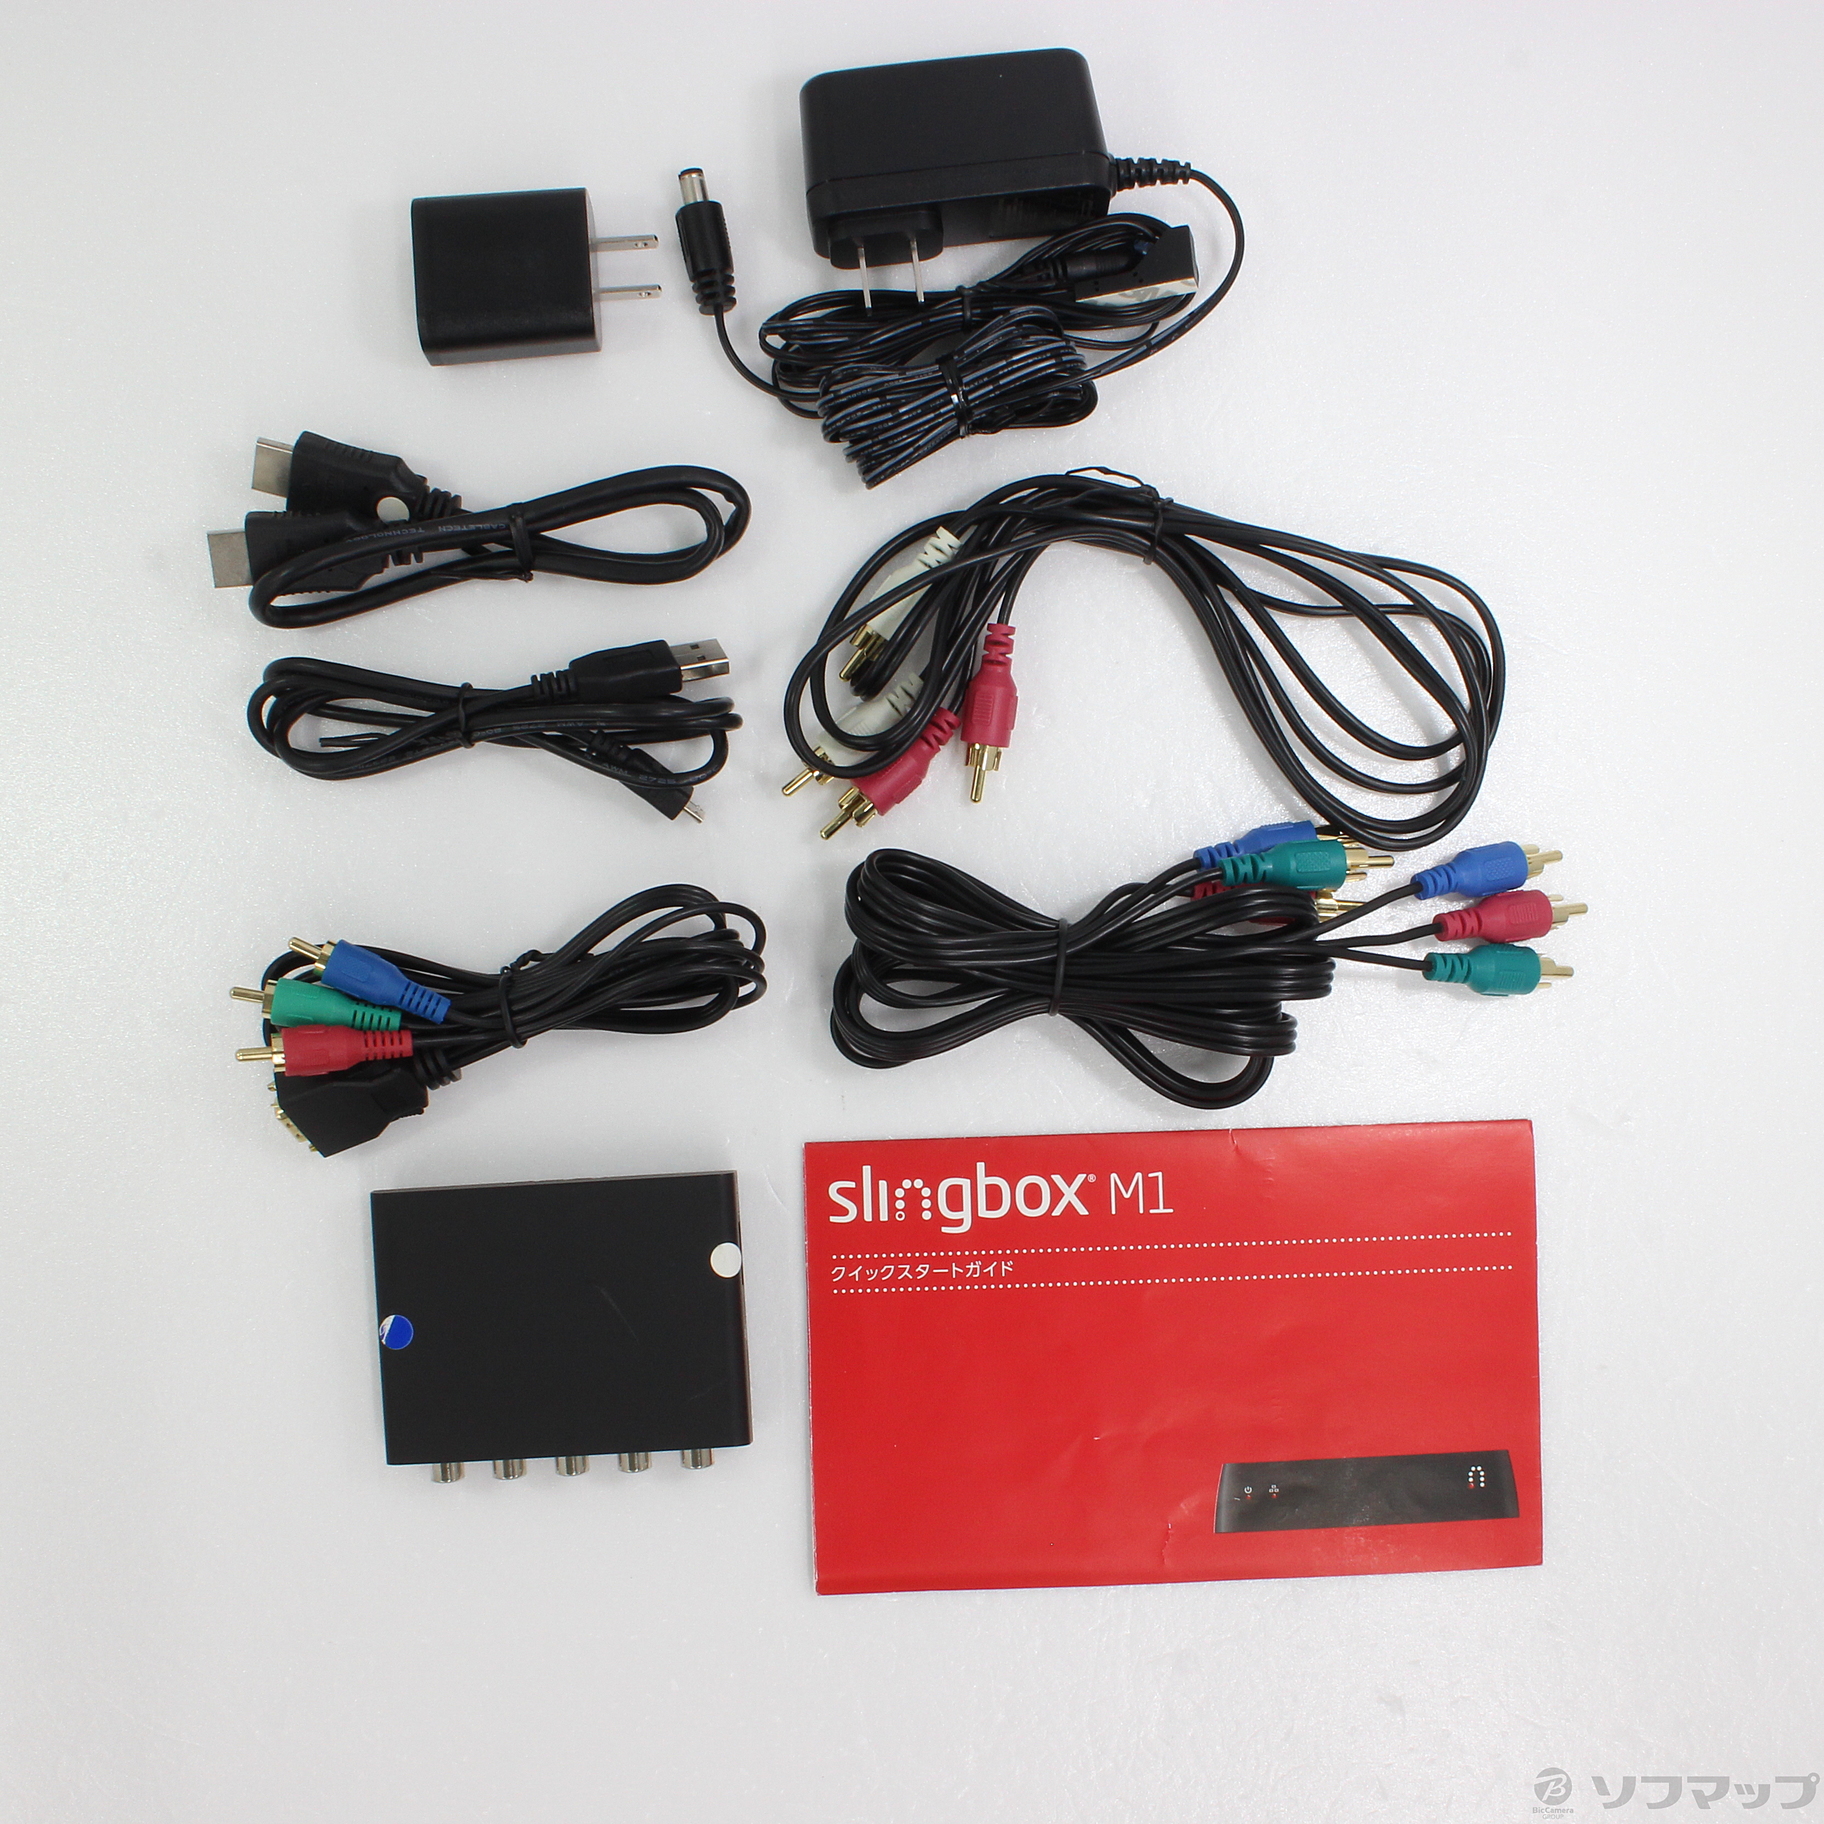 即納 変換プラグ付き Slingbox M1 スリングボックス - テレビ/映像機器